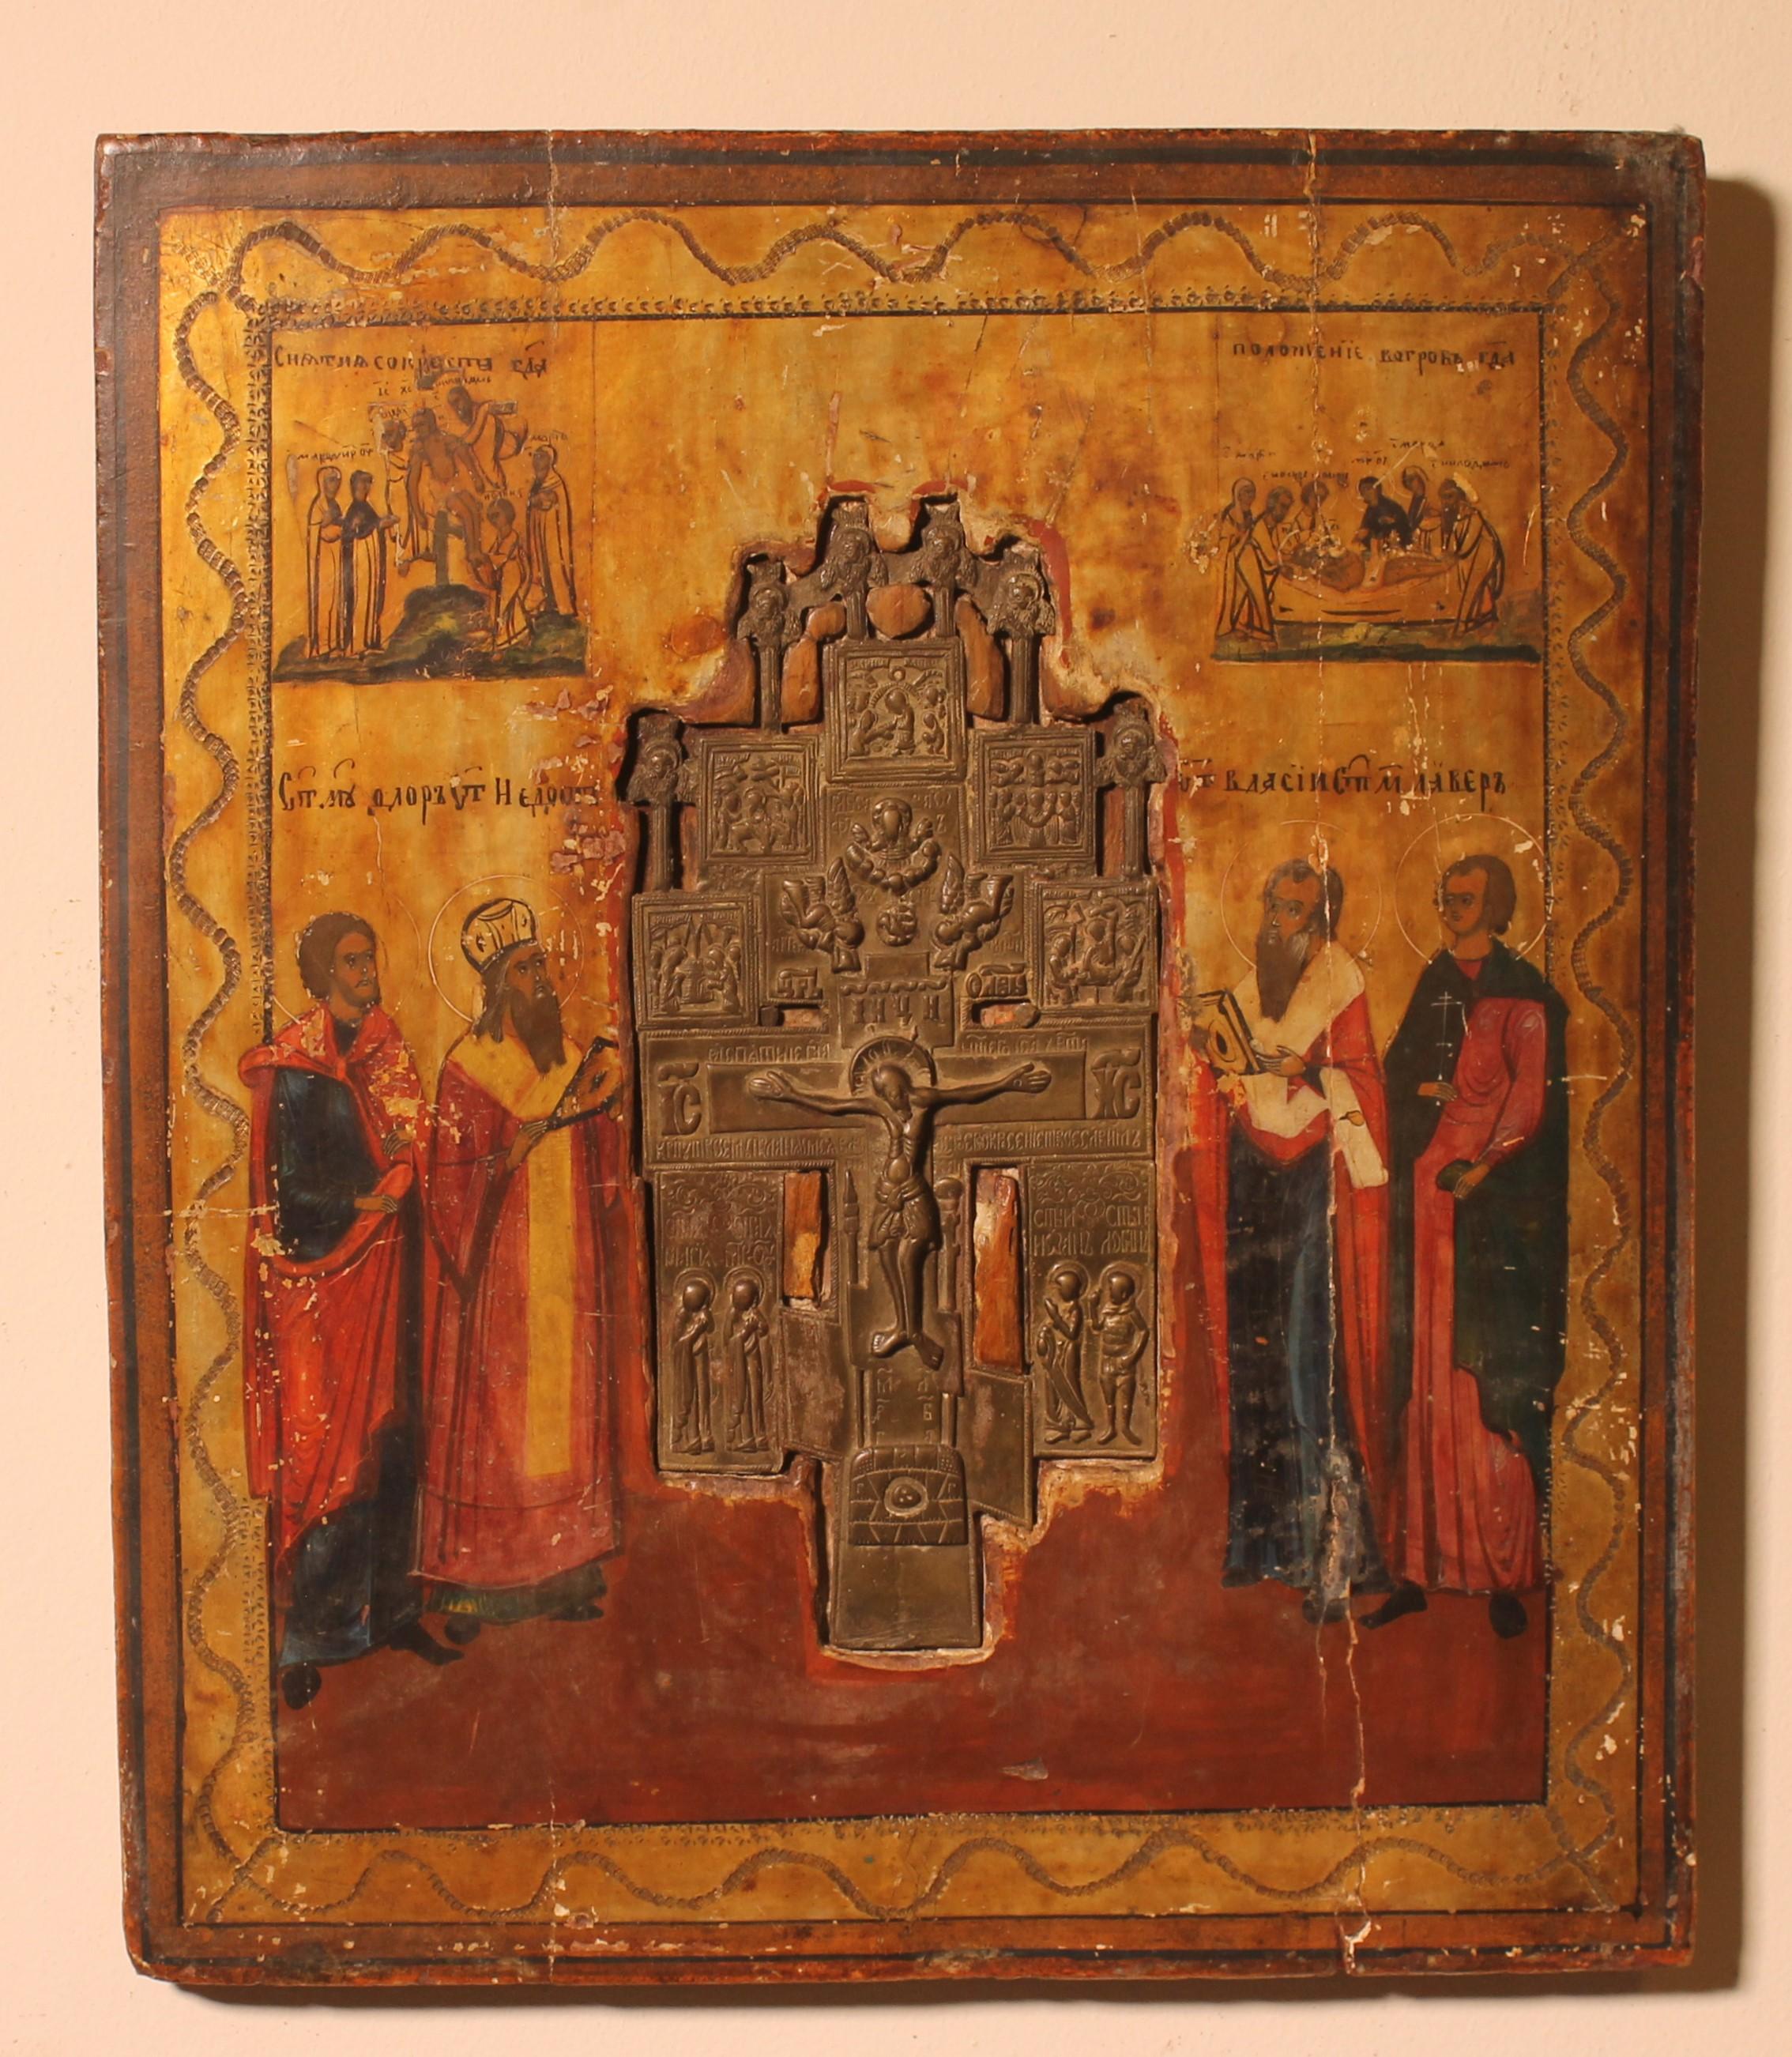 Très belle icône russe avec une croix de procession en son centre, datant du 17e siècle.

Nous pouvons voir que l'icône a été créée pour accueillir la croix de procession avec le Christ au centre et les apôtres le regardant.

Belle patine et bon